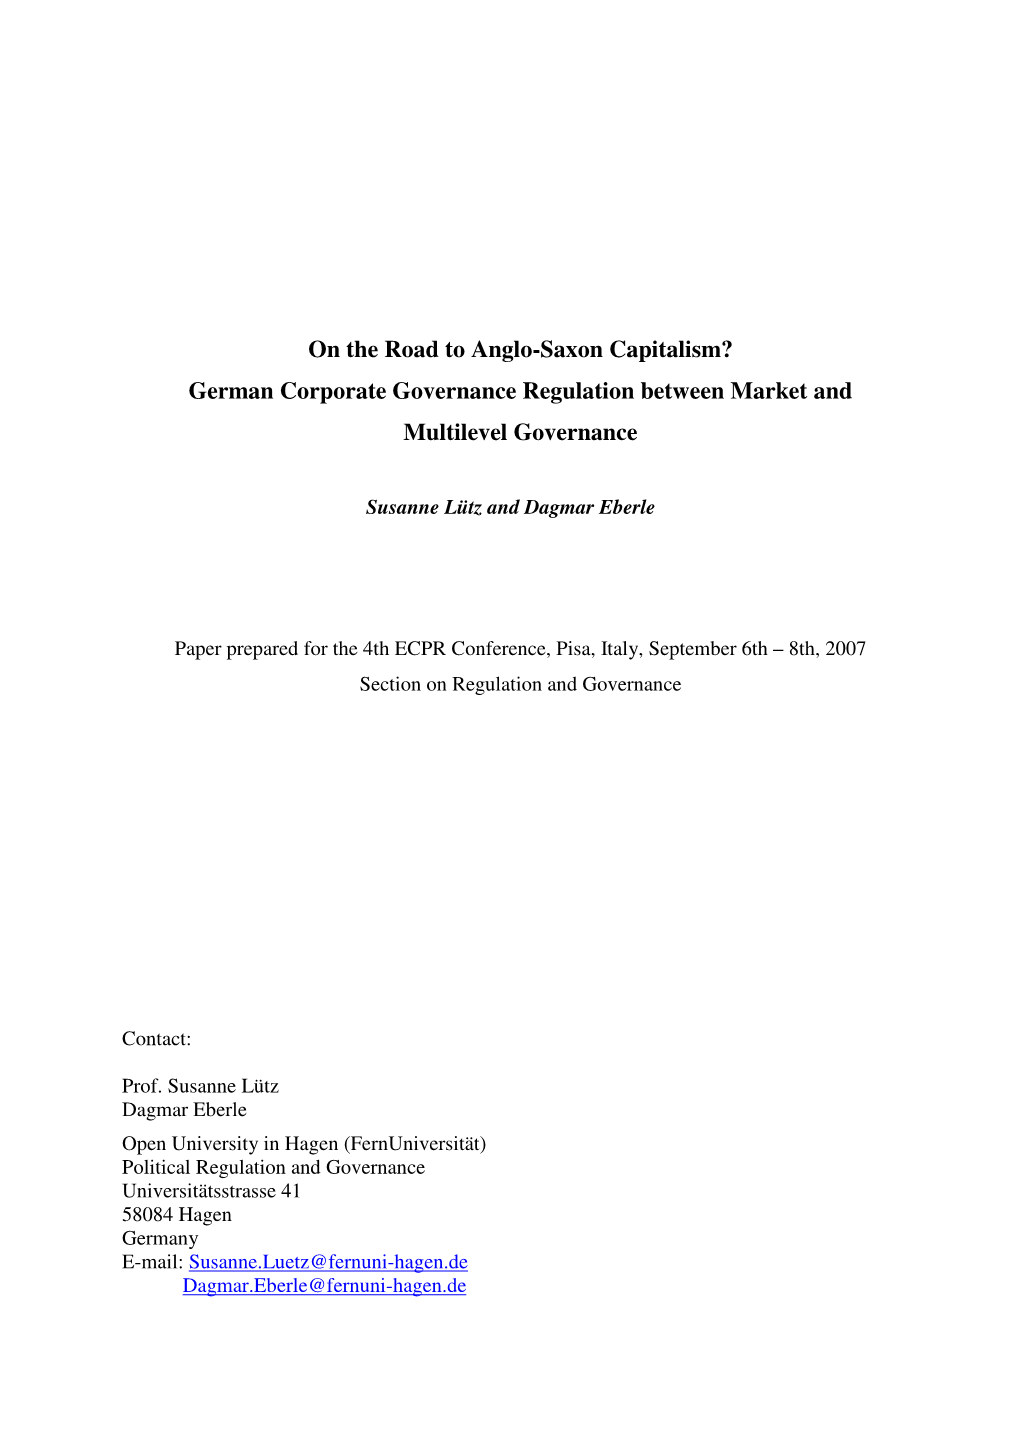 German Corporate Governance Regulation Between Market and Multilevel Governance